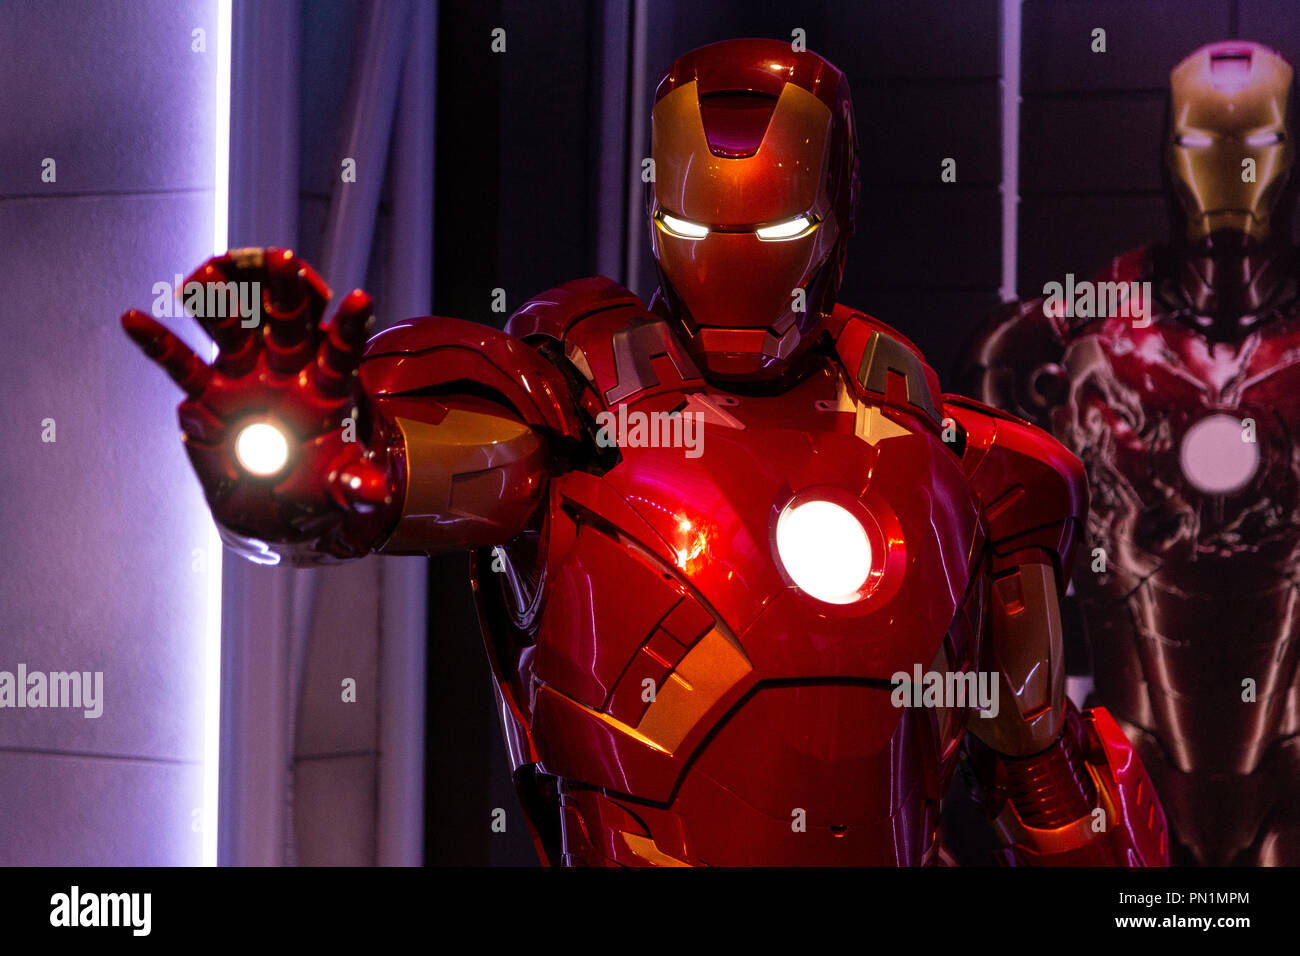 Wachsfigur von Tony Stark der Iron Man von Marvel Comics in Madame Tussauds Wax Museum in Amsterdam, Niederlande Stockfoto